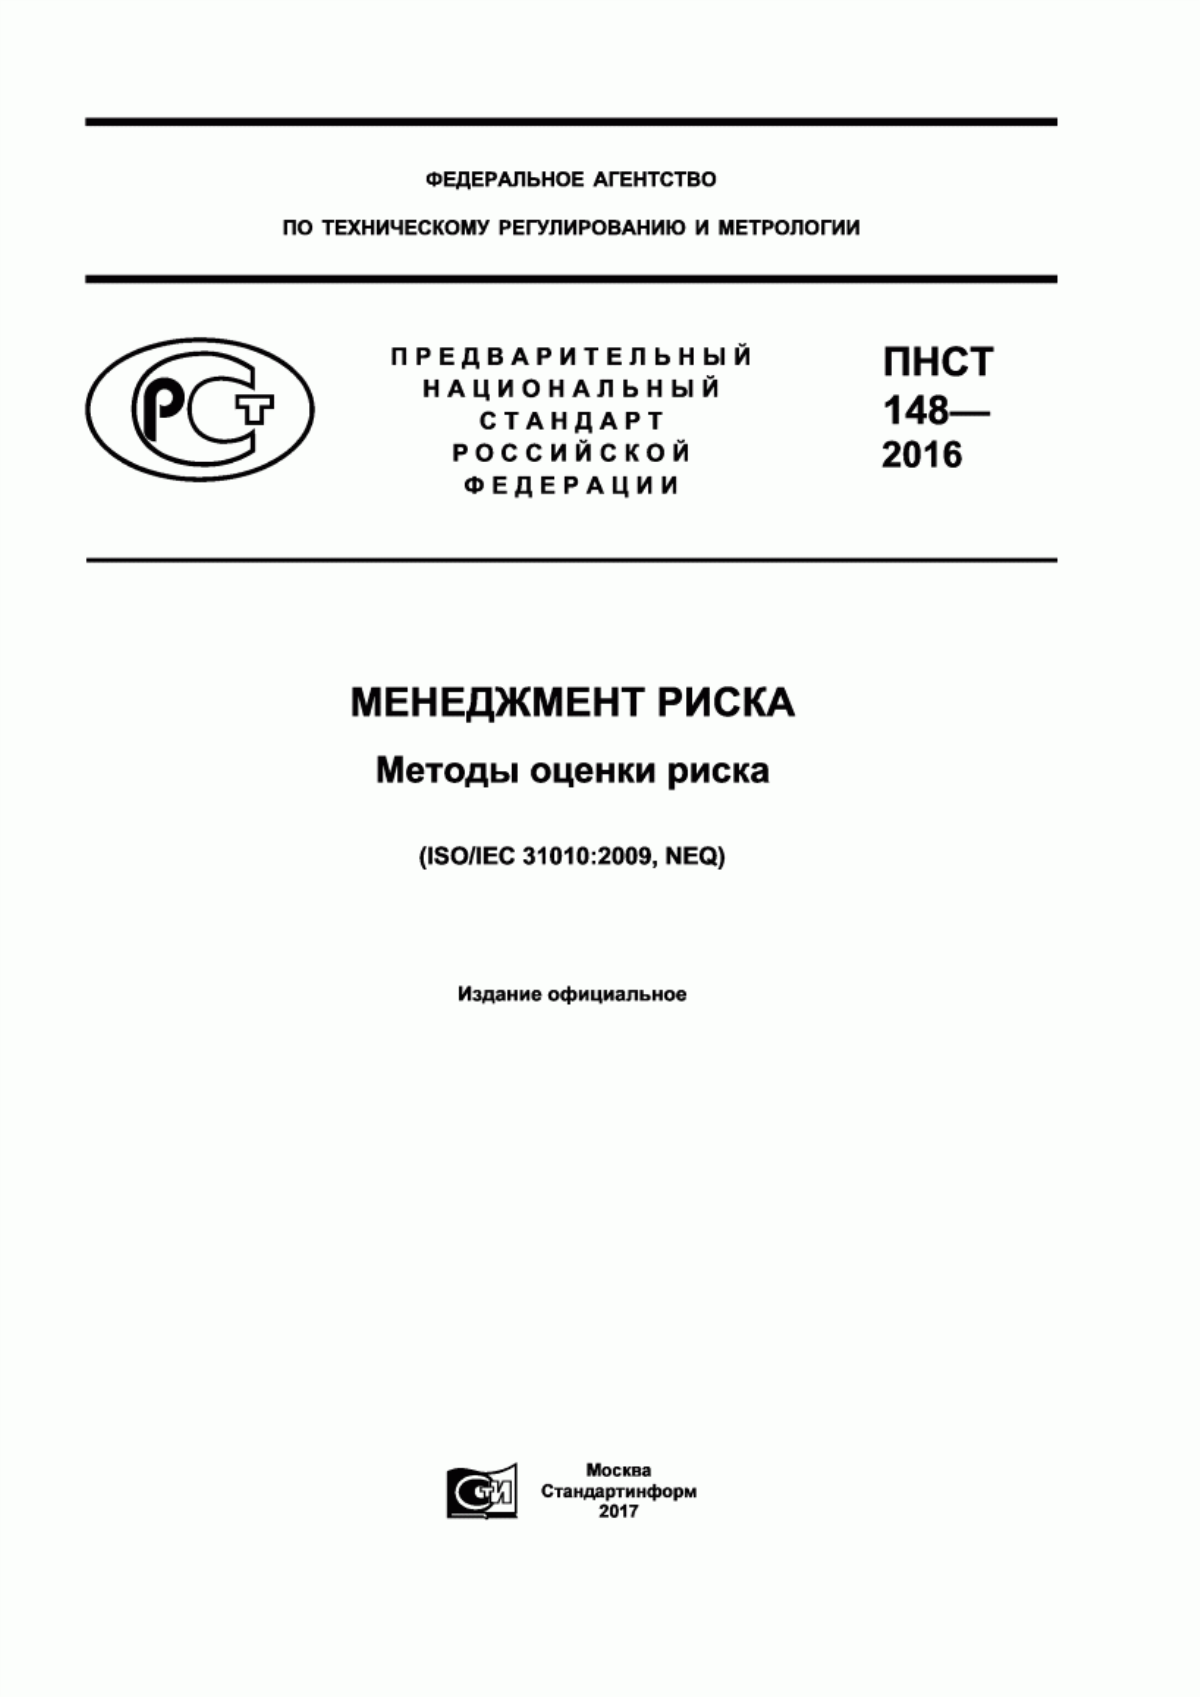 ПНСТ 148-2016 Менеджмент риска. Методы оценки риска